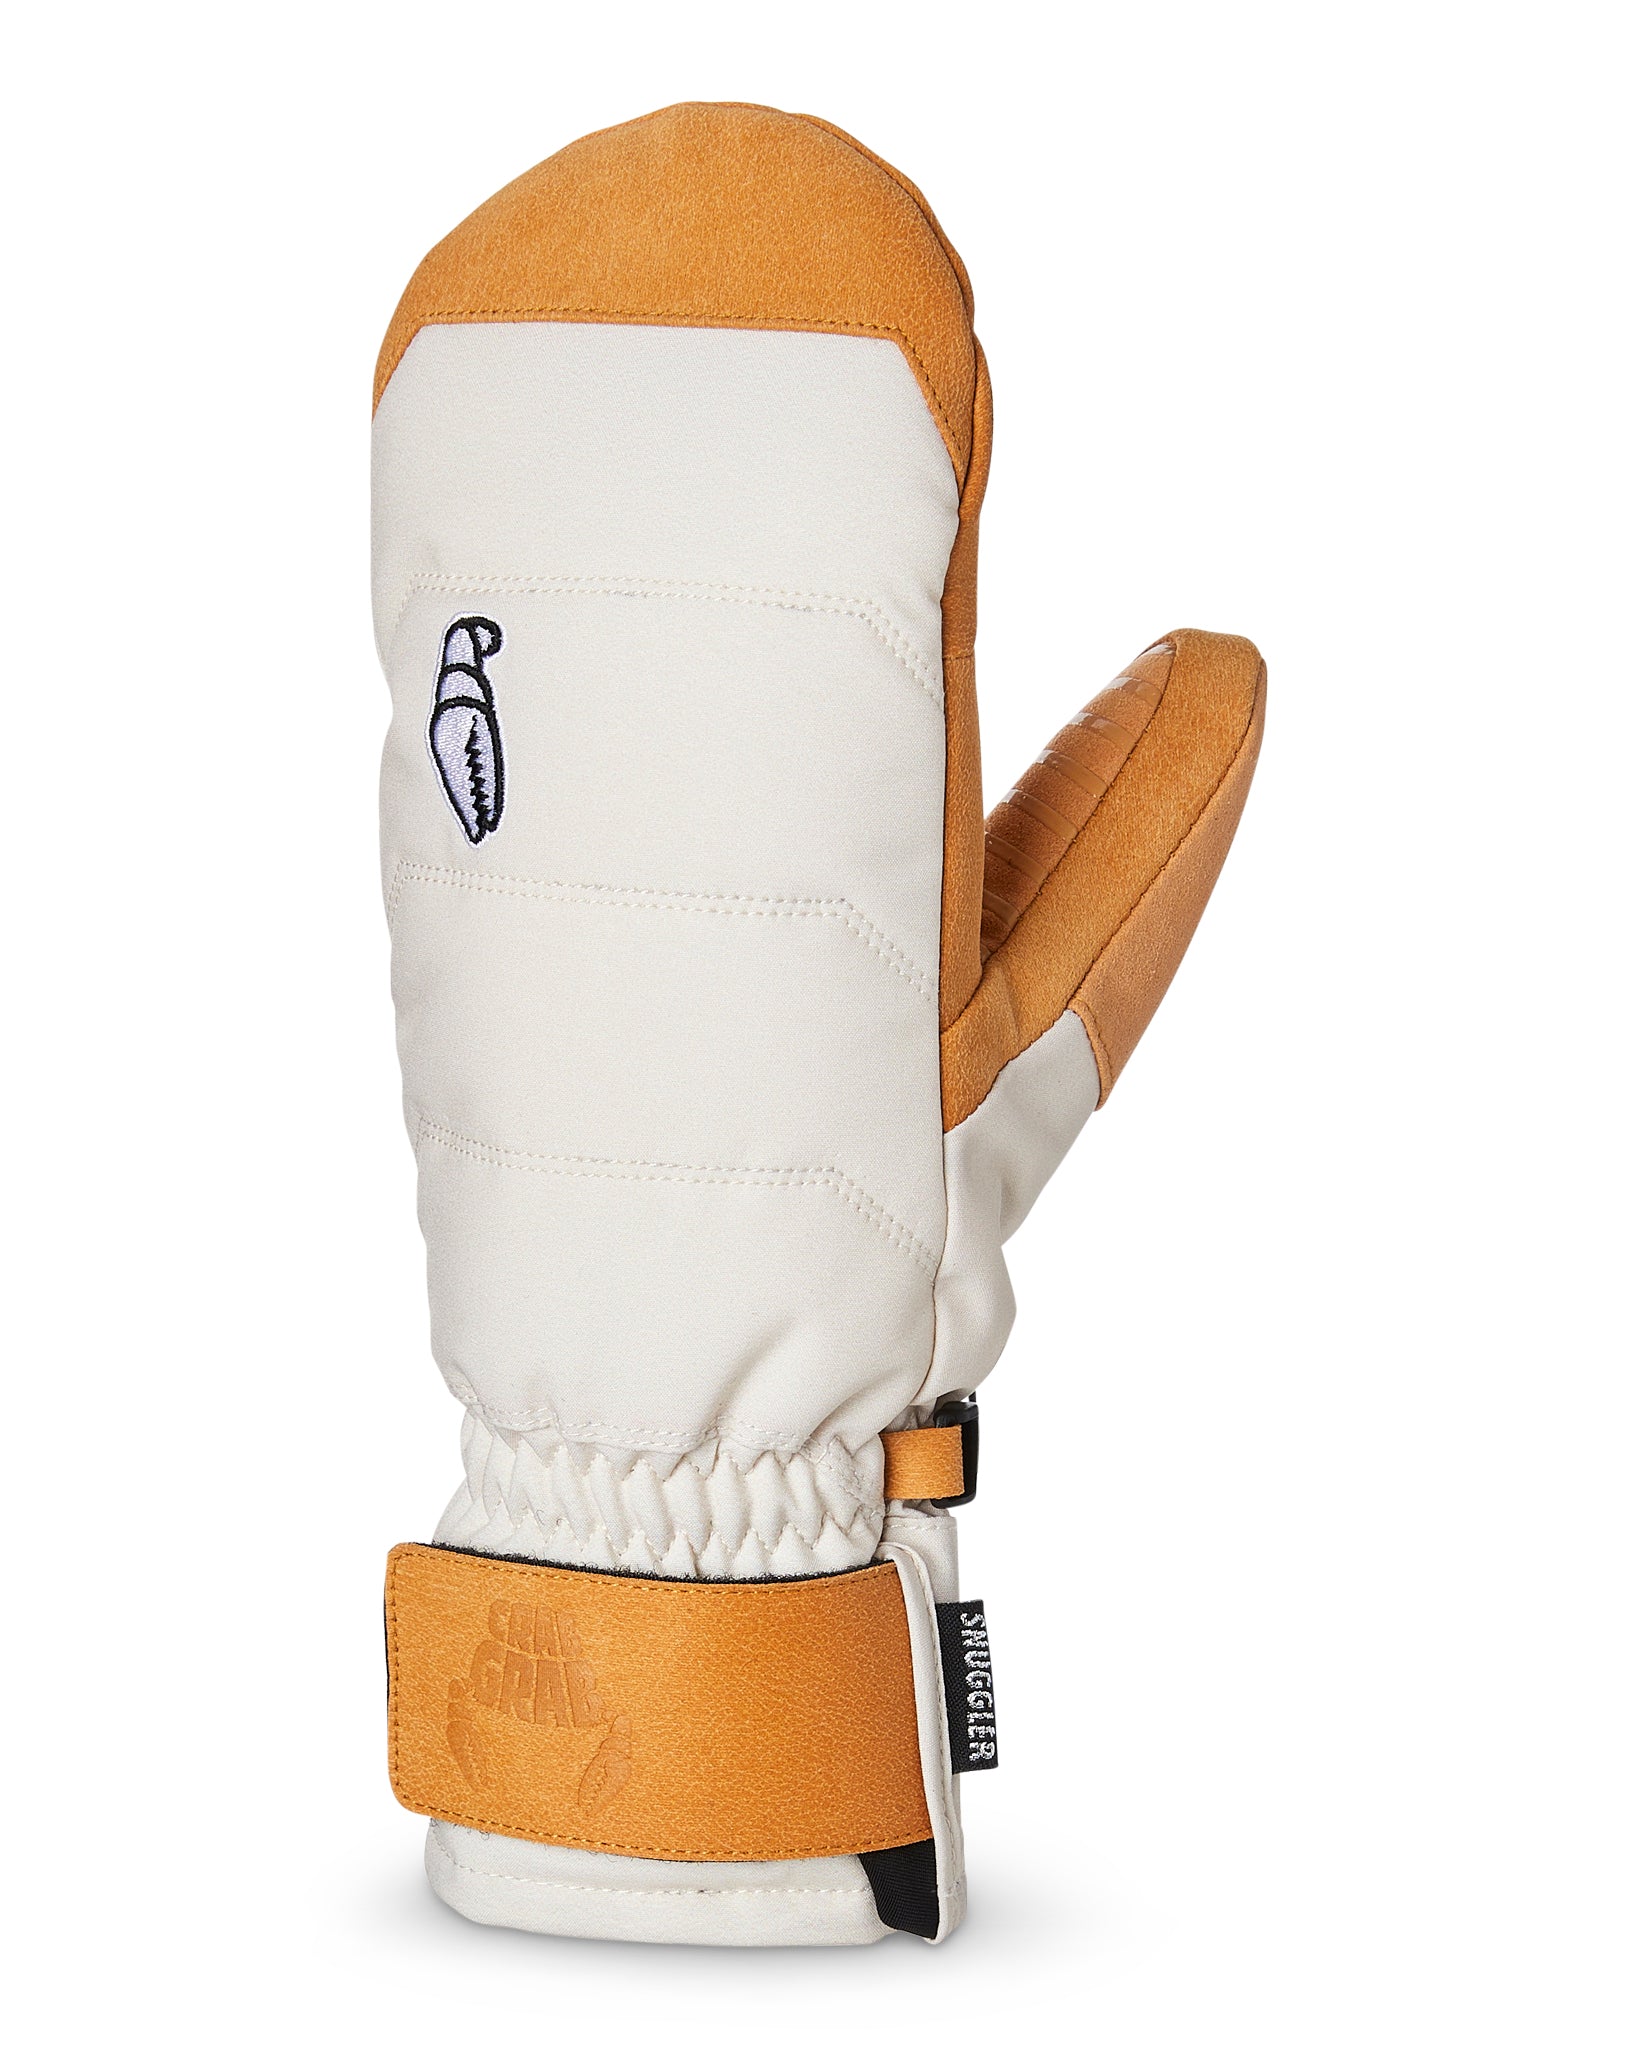 Crab Grab Slap Mitt Snowboard Gloves - Bones – Daddies Board Shop